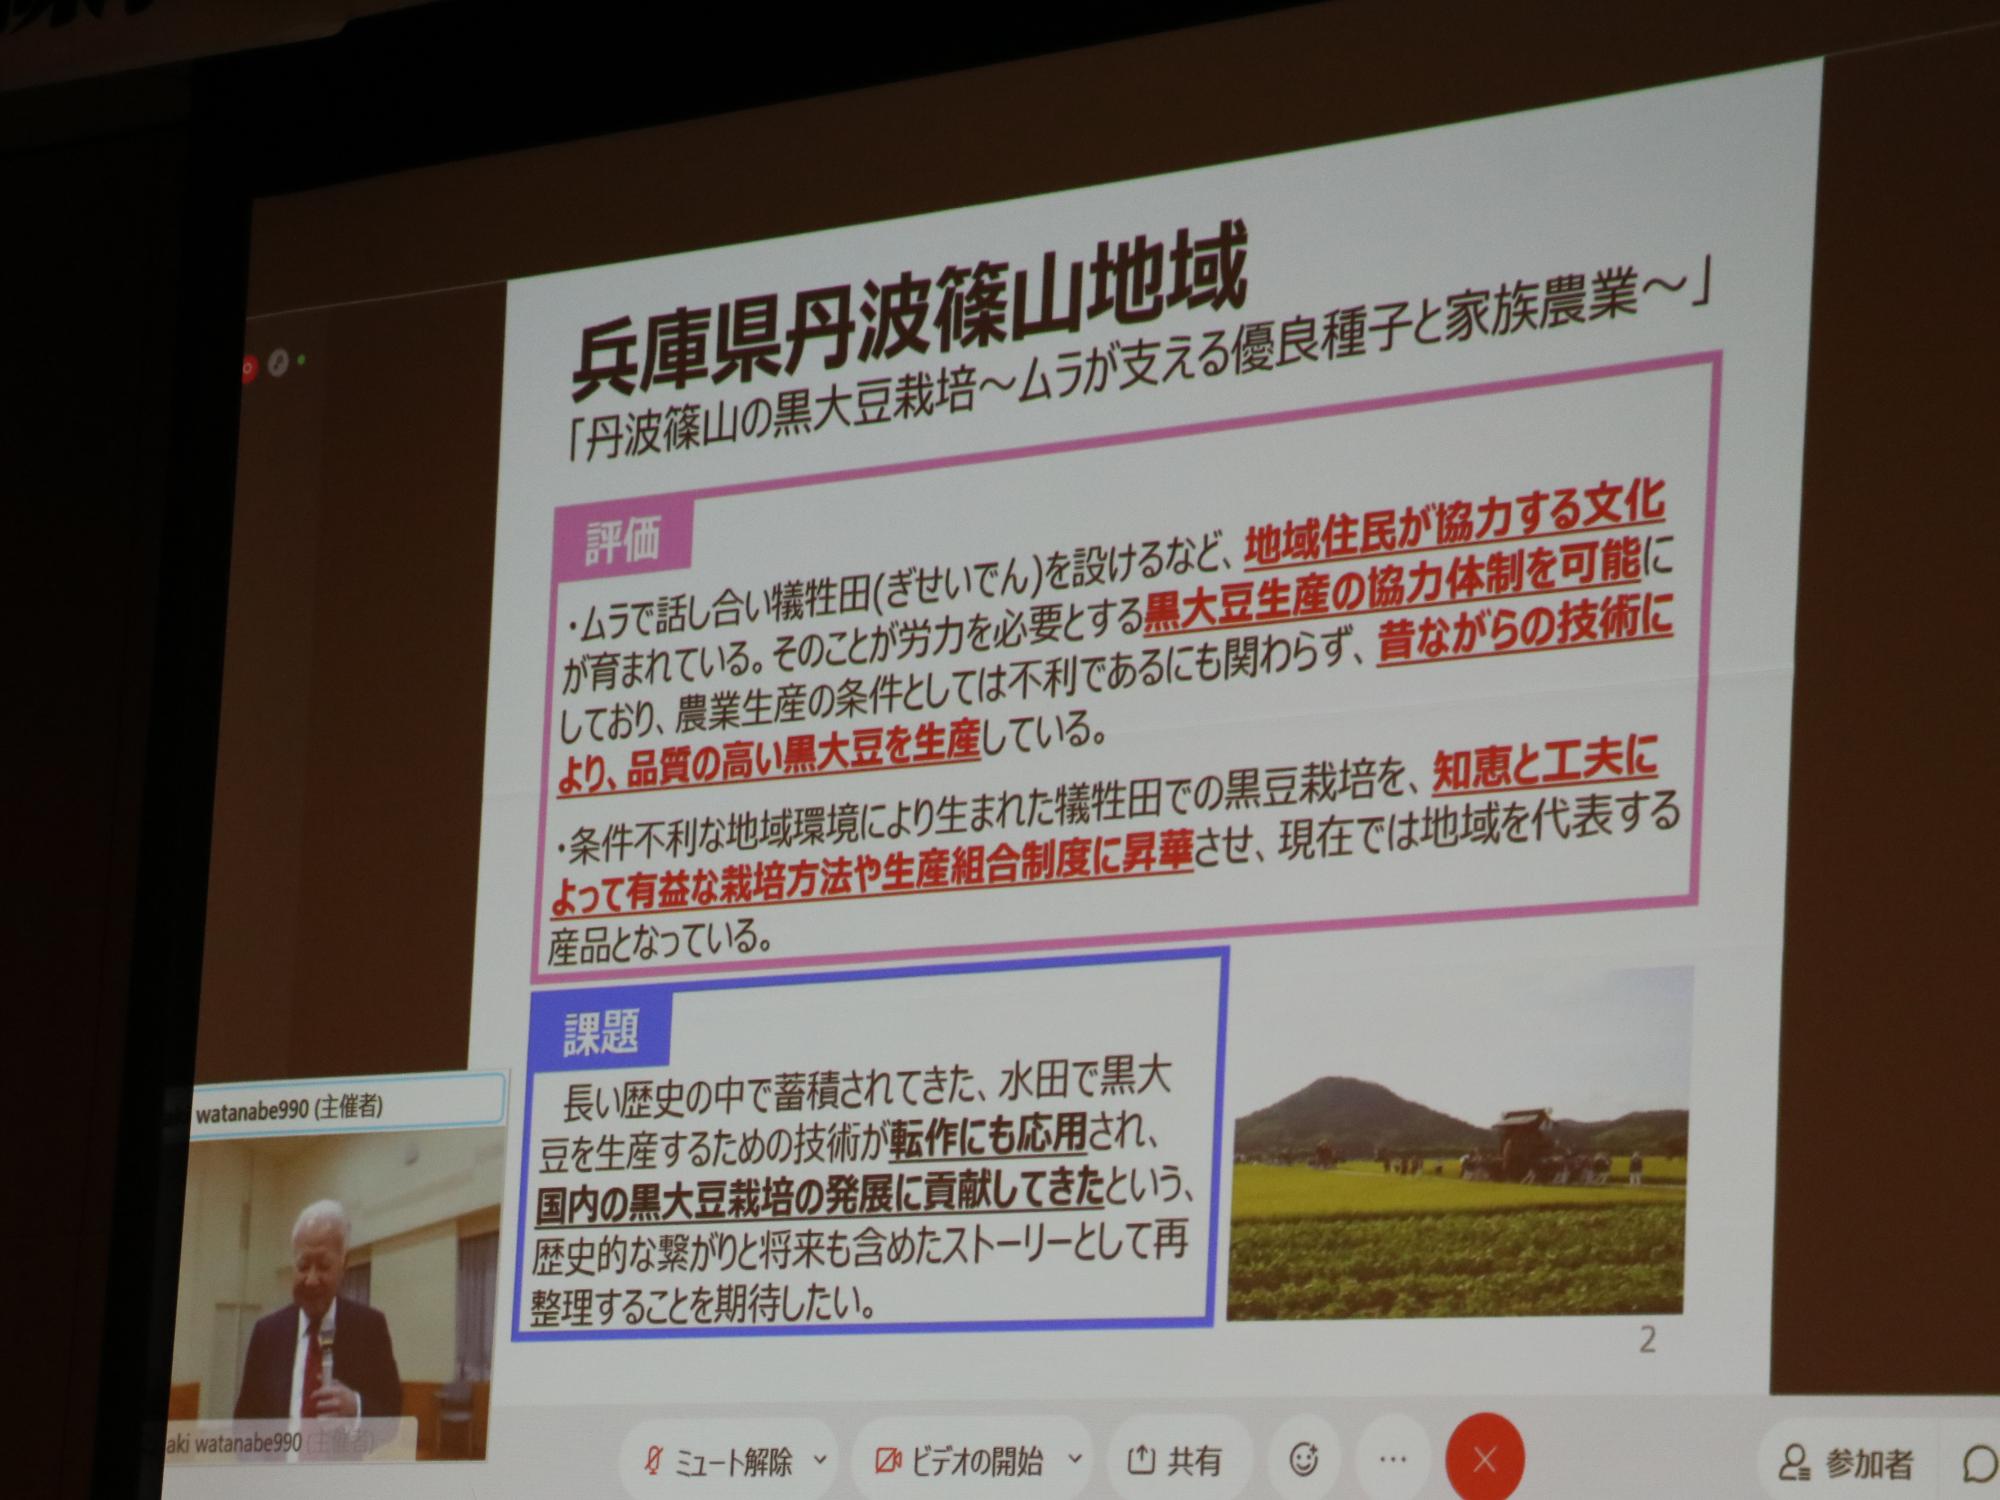 スライドを使って黒大豆栽培の評価と課題を説明されている